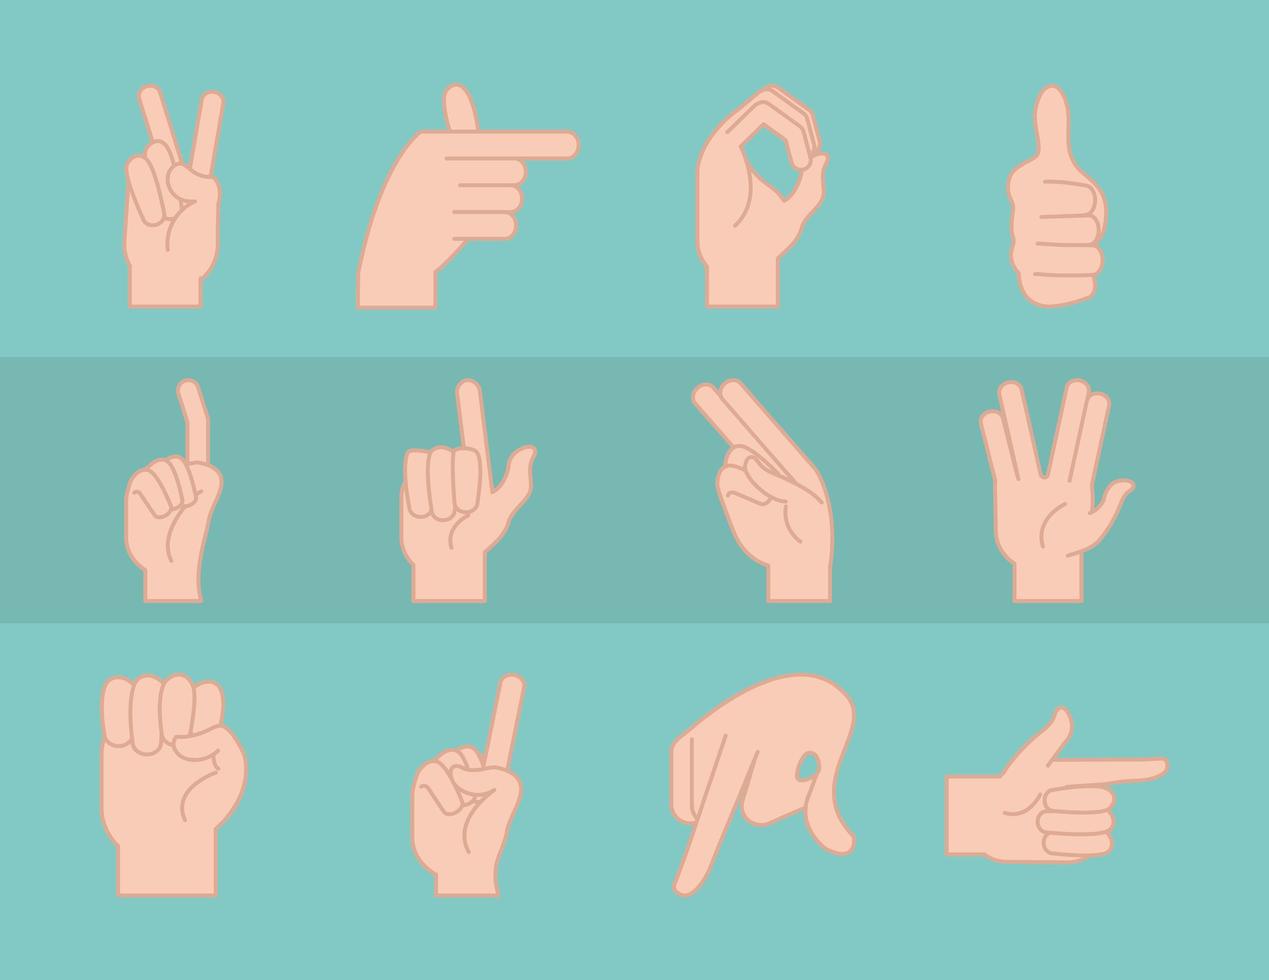 gebarentaal en handgebaren collectie vector